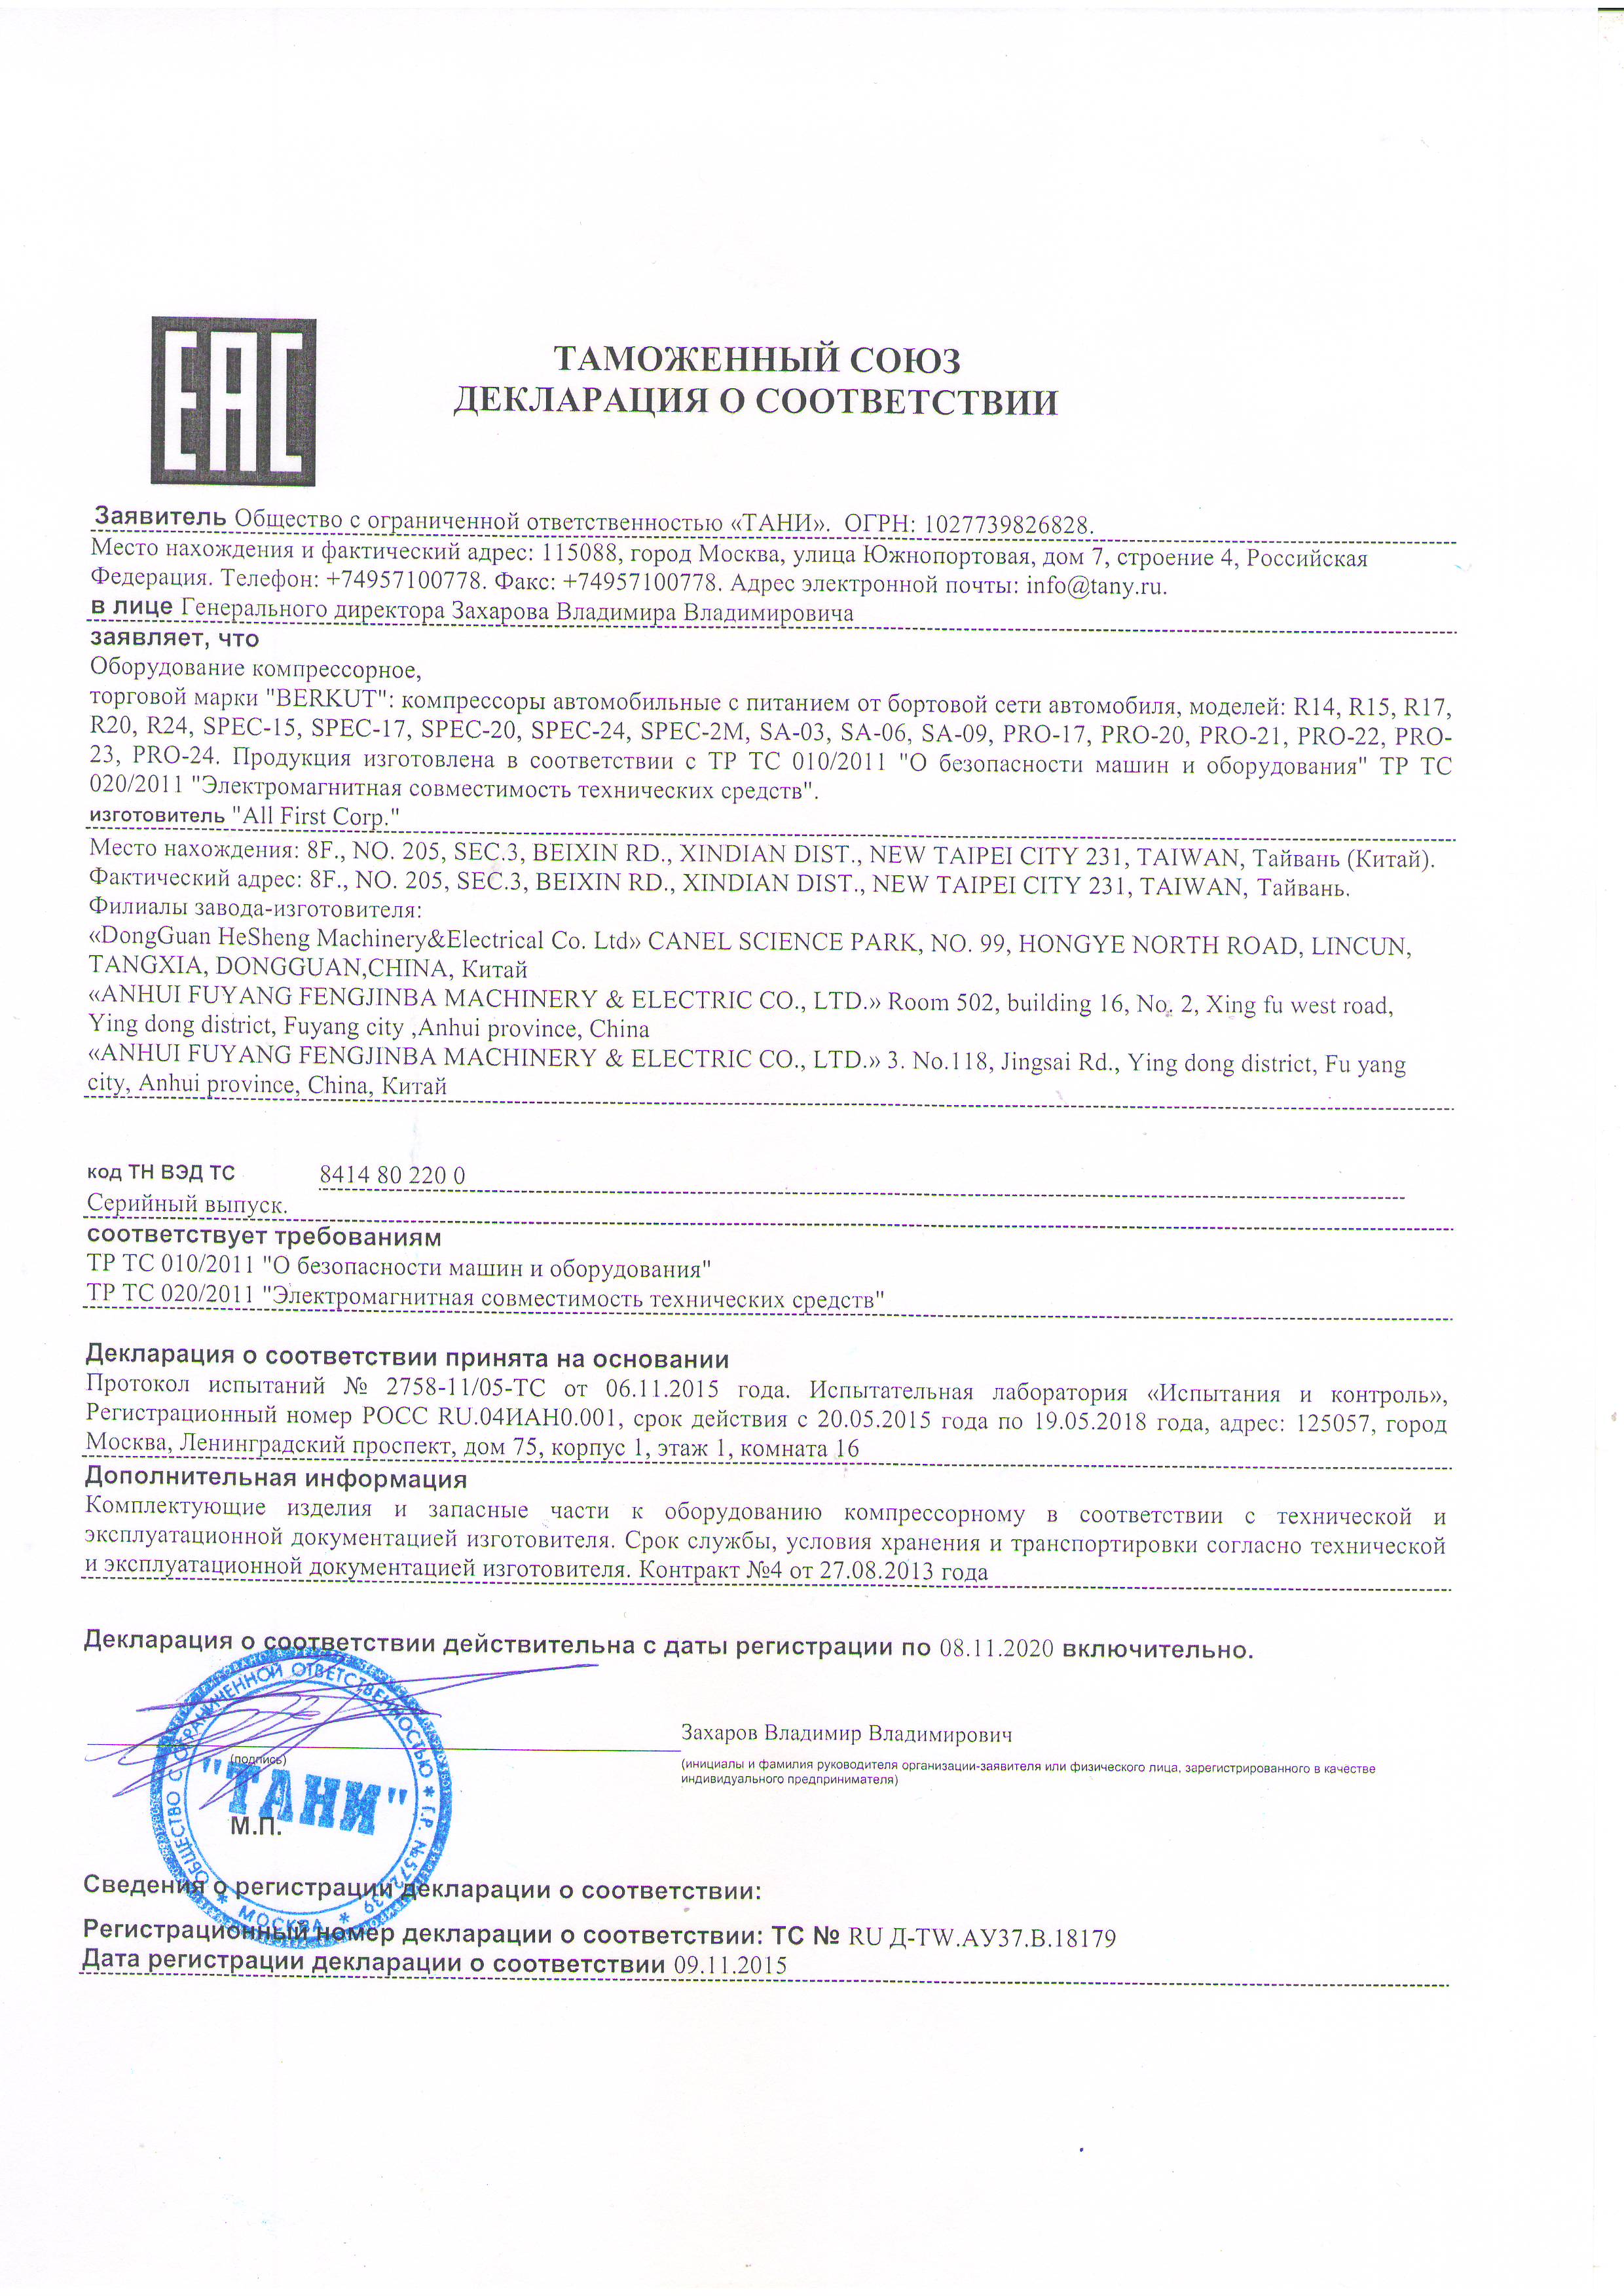 Сертификат на компрессоры «Berkut»